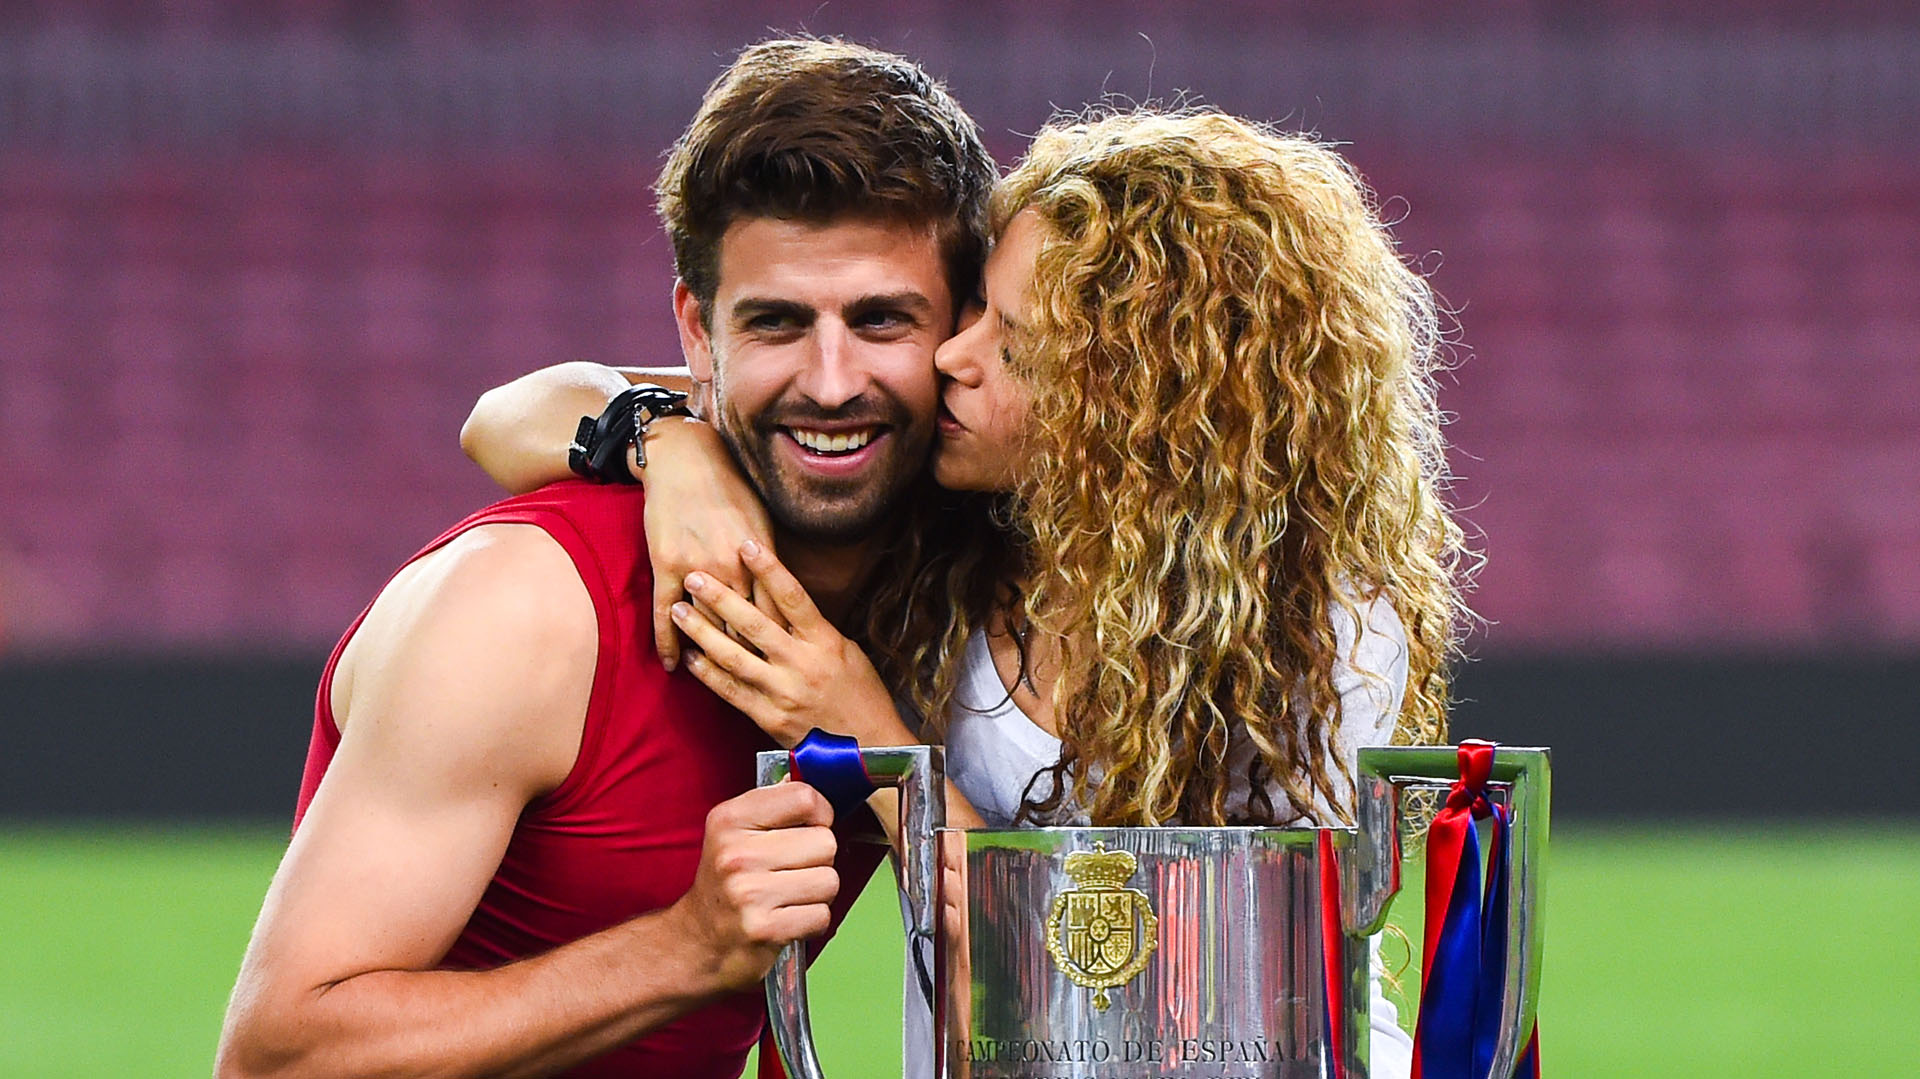 Amigo de Gerard Piqué afirmó que Shakira podría haber sido la infiel de la relación. (Photo by David Ramos/Getty Images)